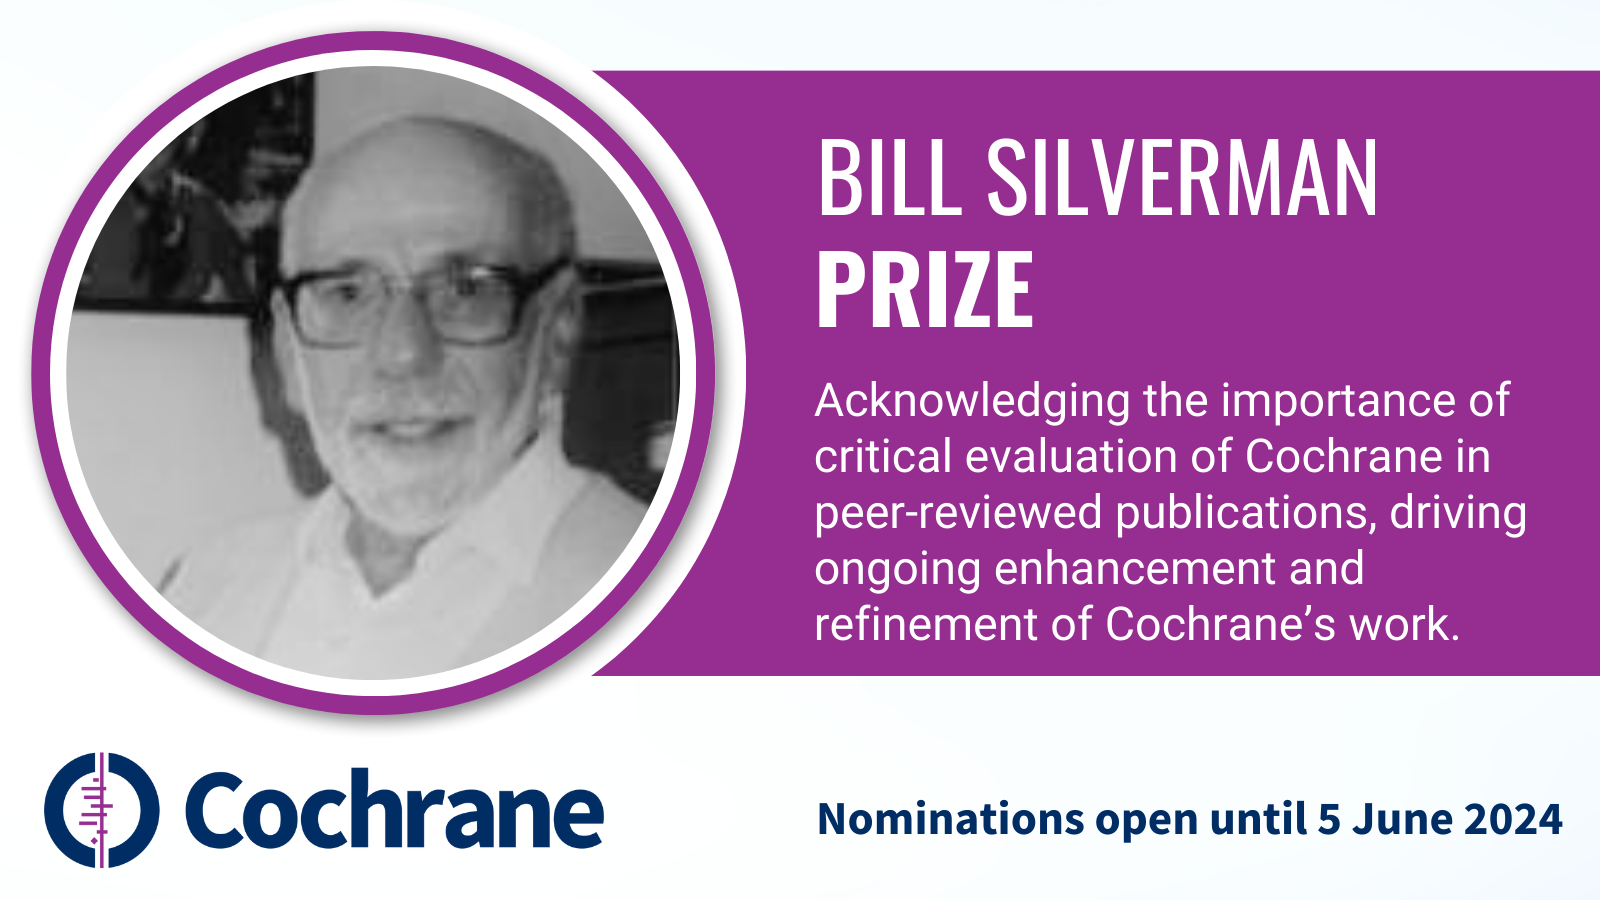 Bill Silverman